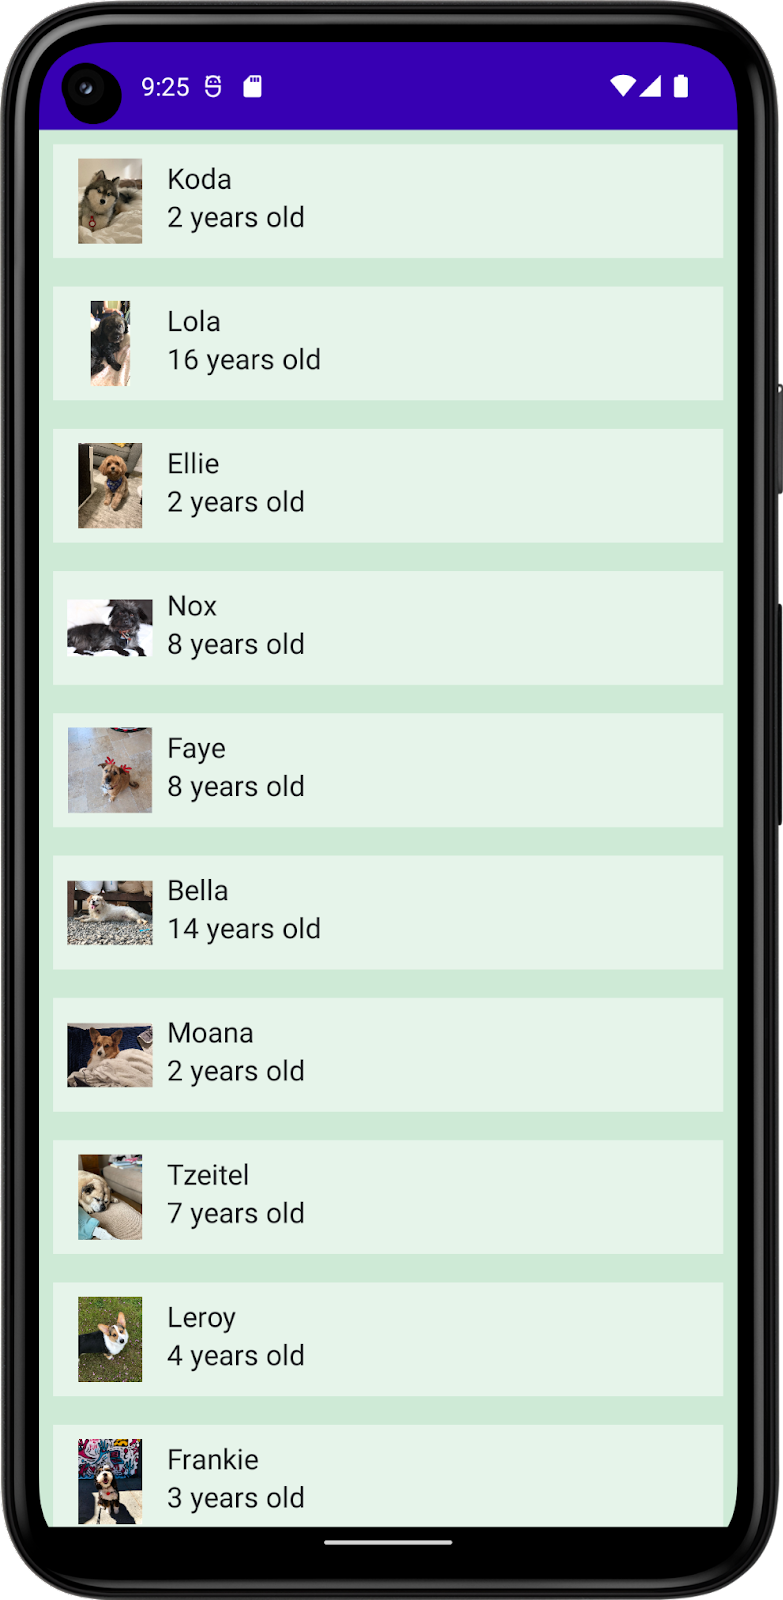 此图片在 DefaultPreview 中显示了一款应用，其中包含狗狗的列表，列表中包含狗狗的名字、照片和年龄。此应用包含应用的背景颜色、列表项的背景颜色以及文本颜色。